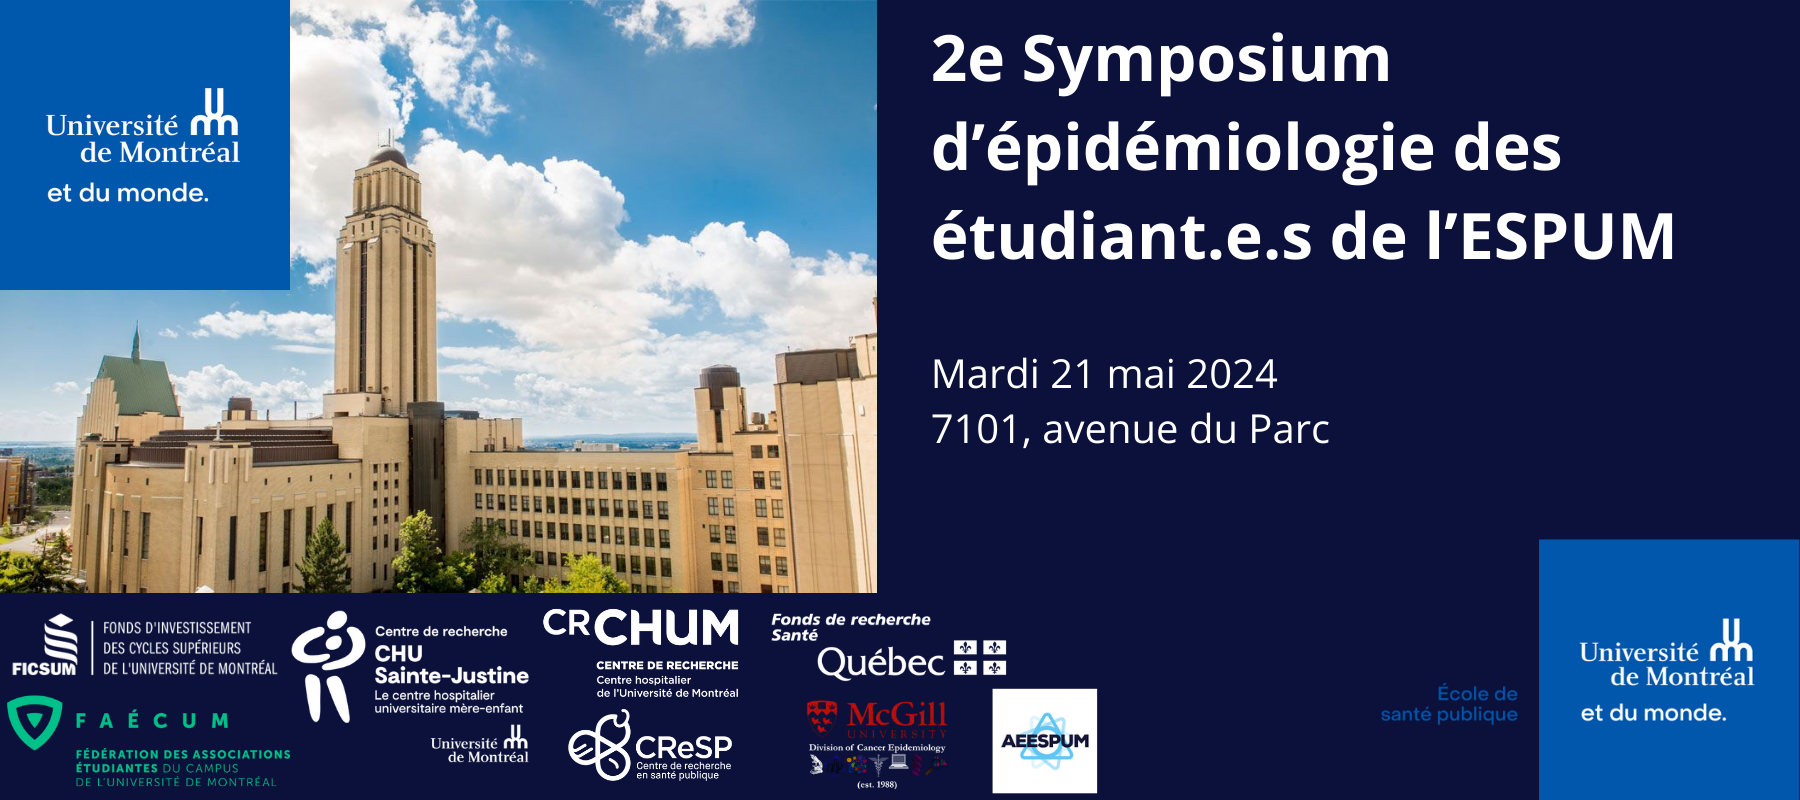 2e Symposium d'épidémiologie des étudiant.e.s de l’ESPUM